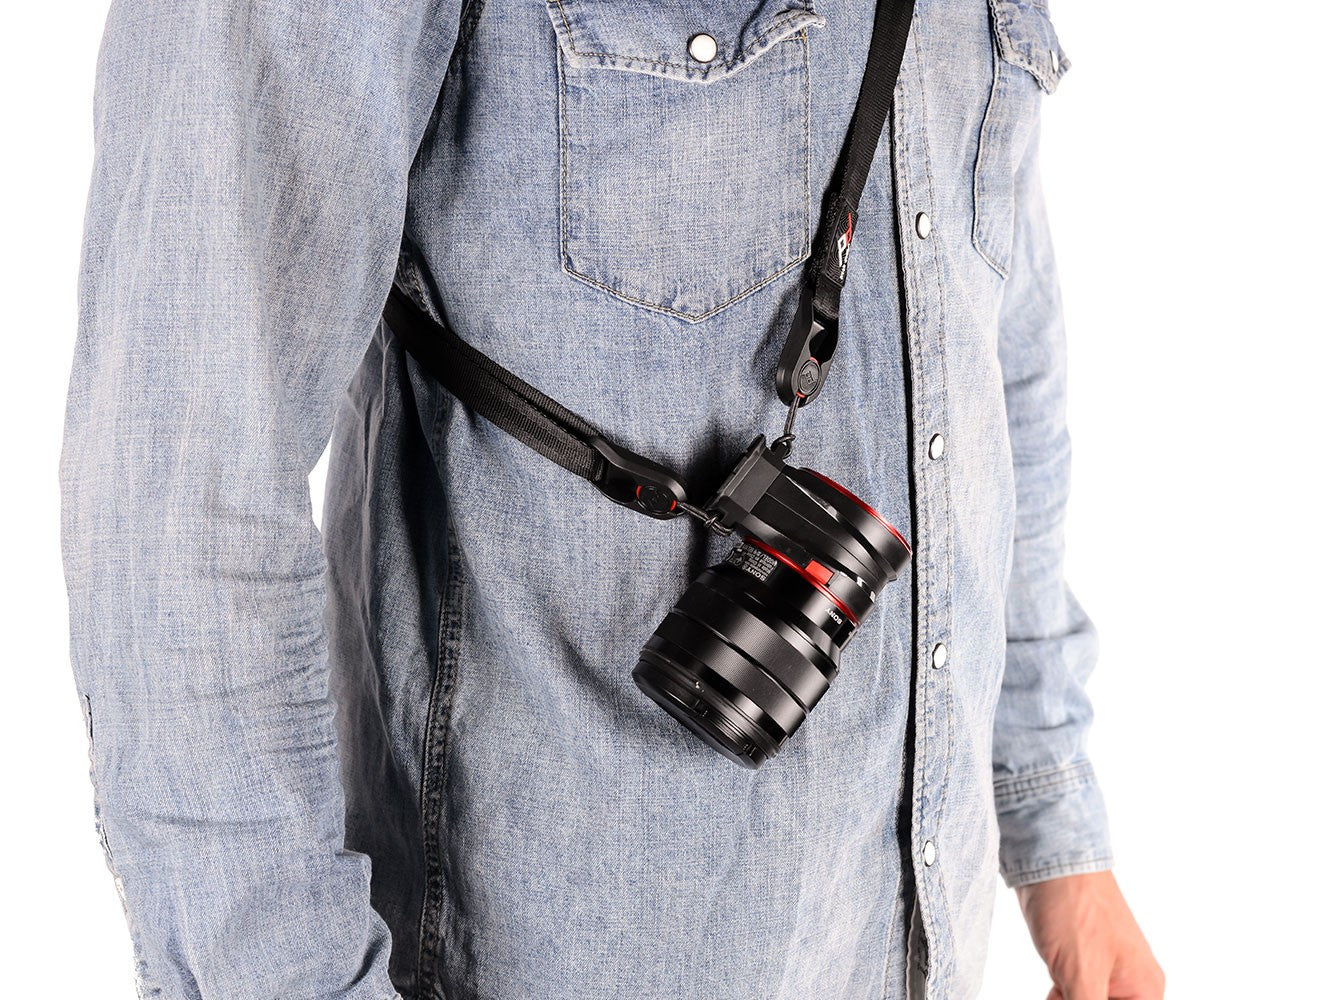 Peak Design Capture Lens Clip for Canon Lenses, bags accessories, Peak Design - Pictureline  - 5